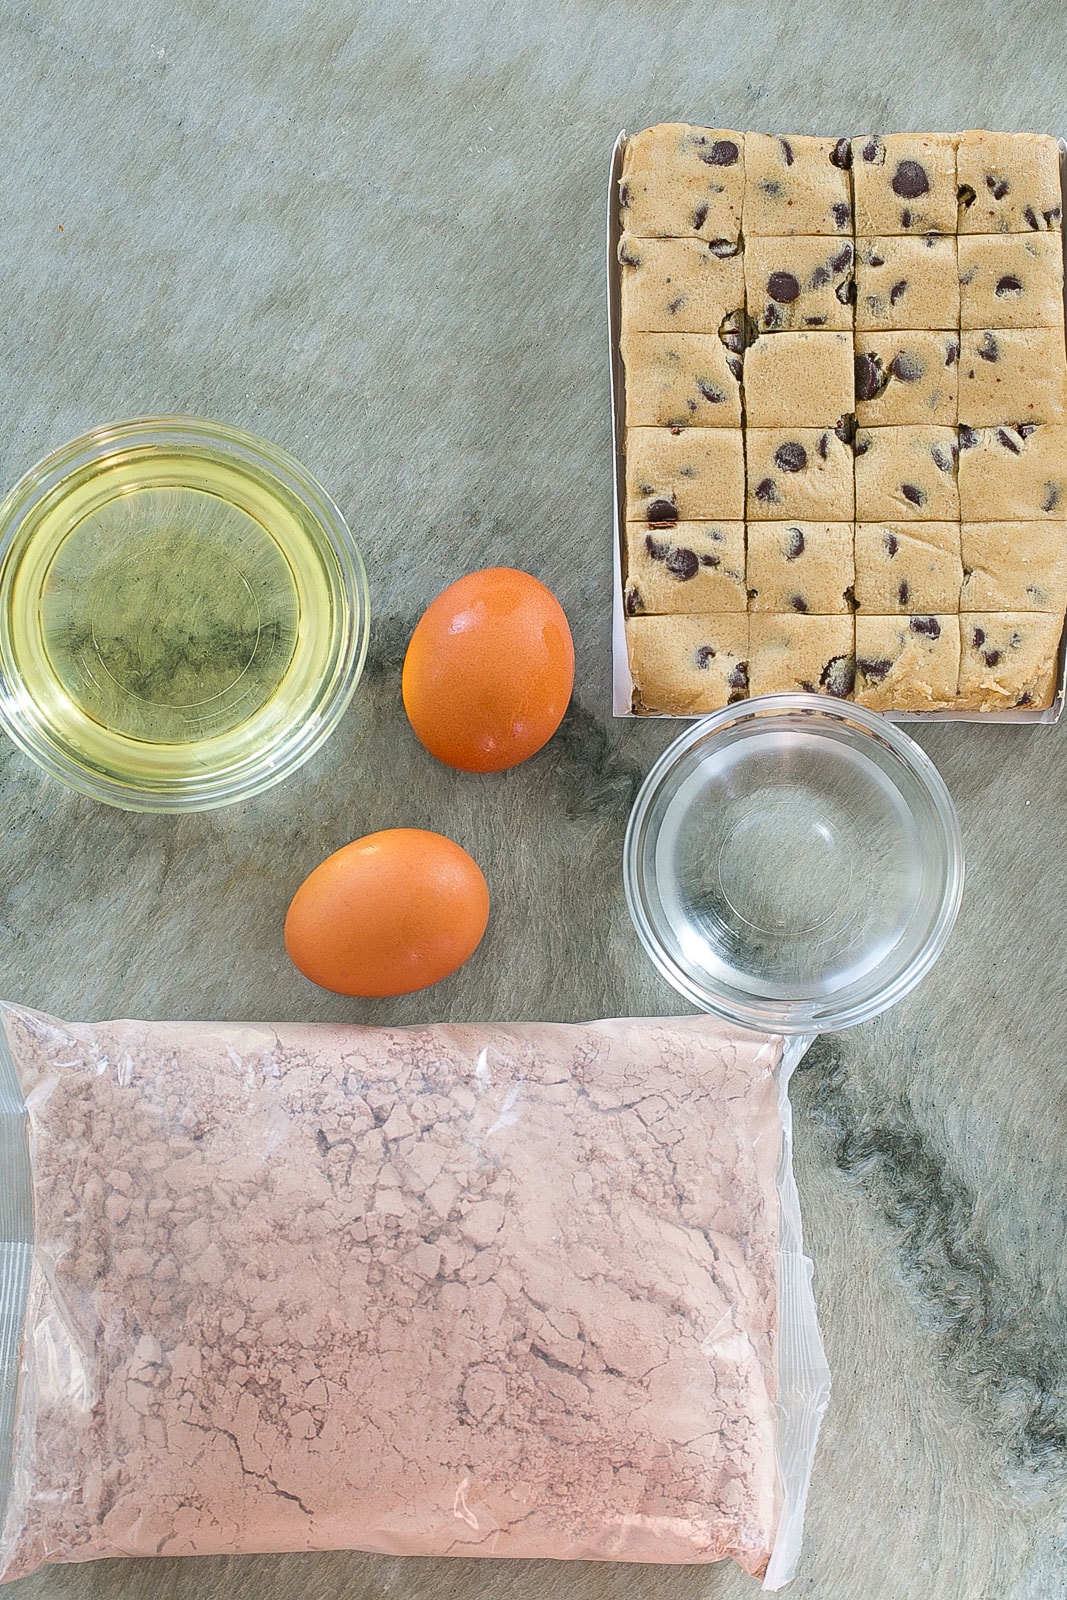 Ingredients to make semi-homemade Brookies.